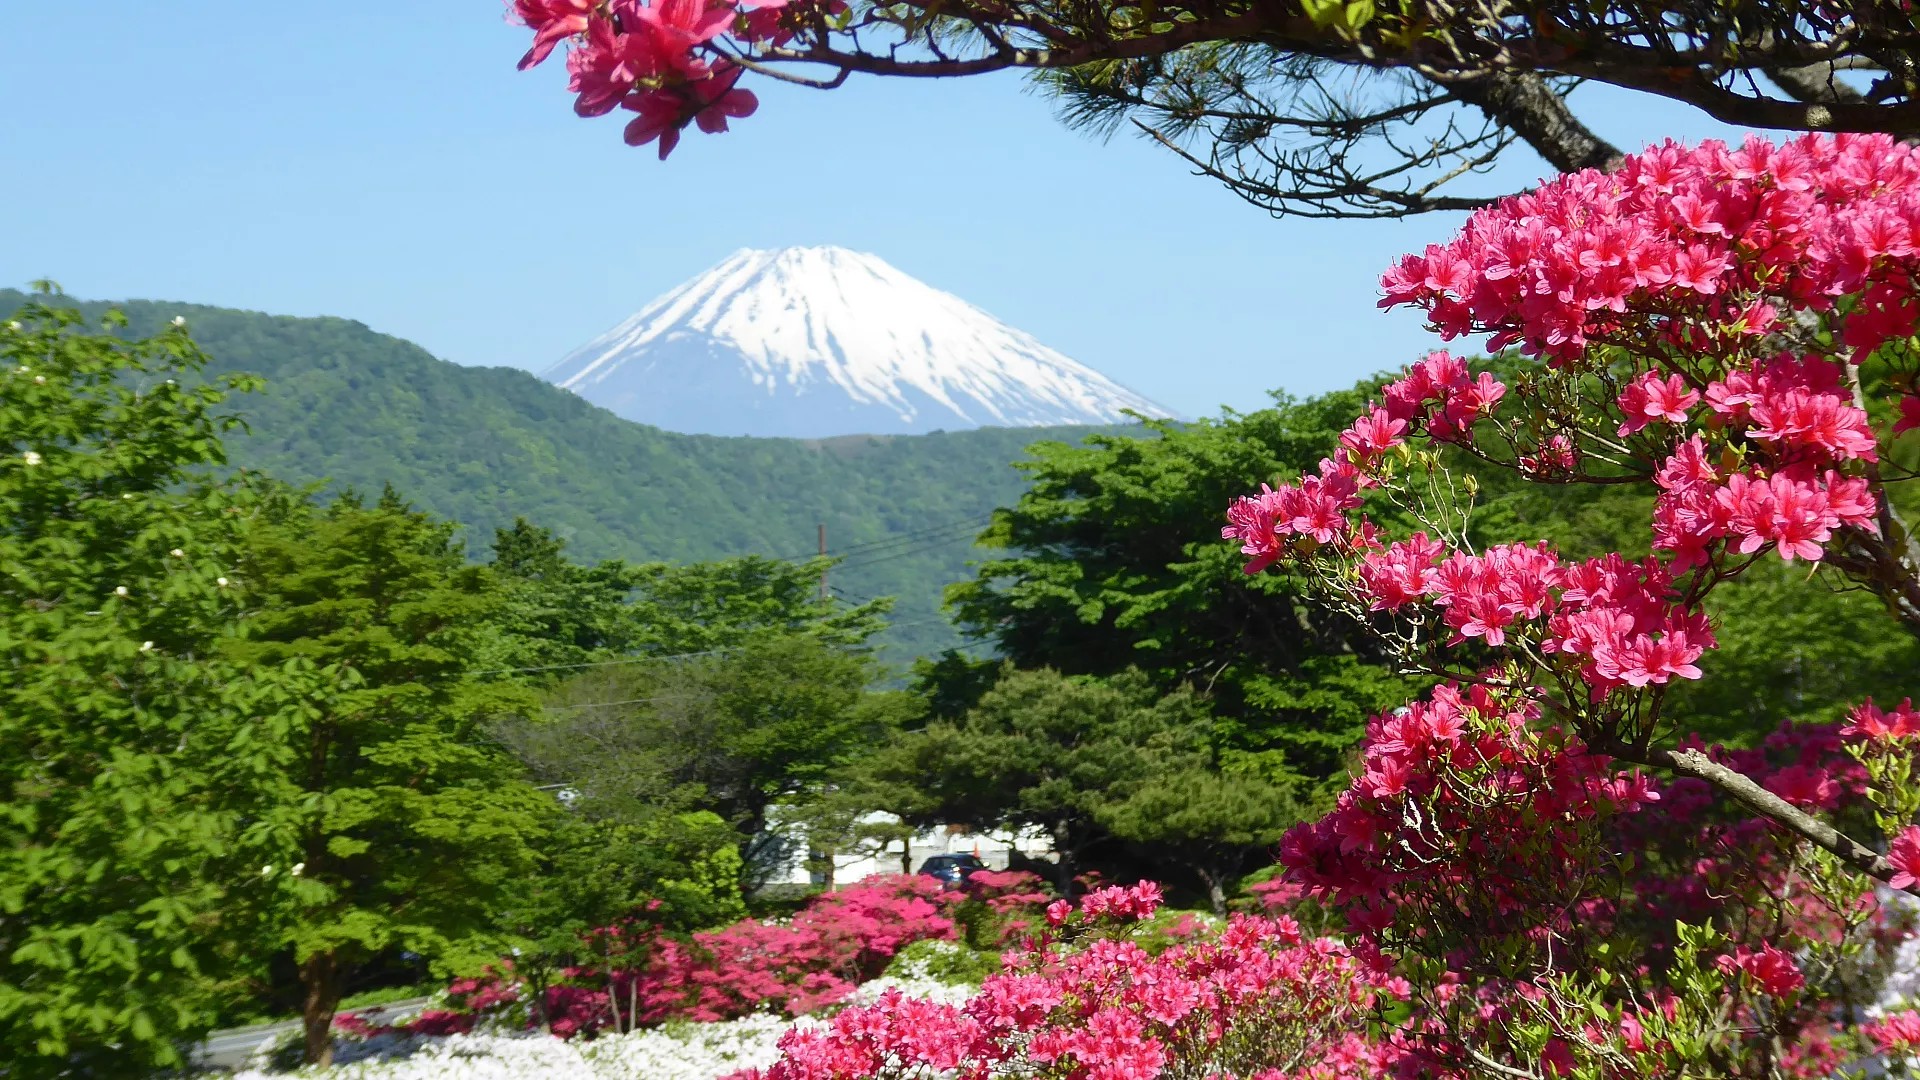 Una montaña de basura: Japón introduce un límite de visitantes en el monte Fuji para combatir la contaminación